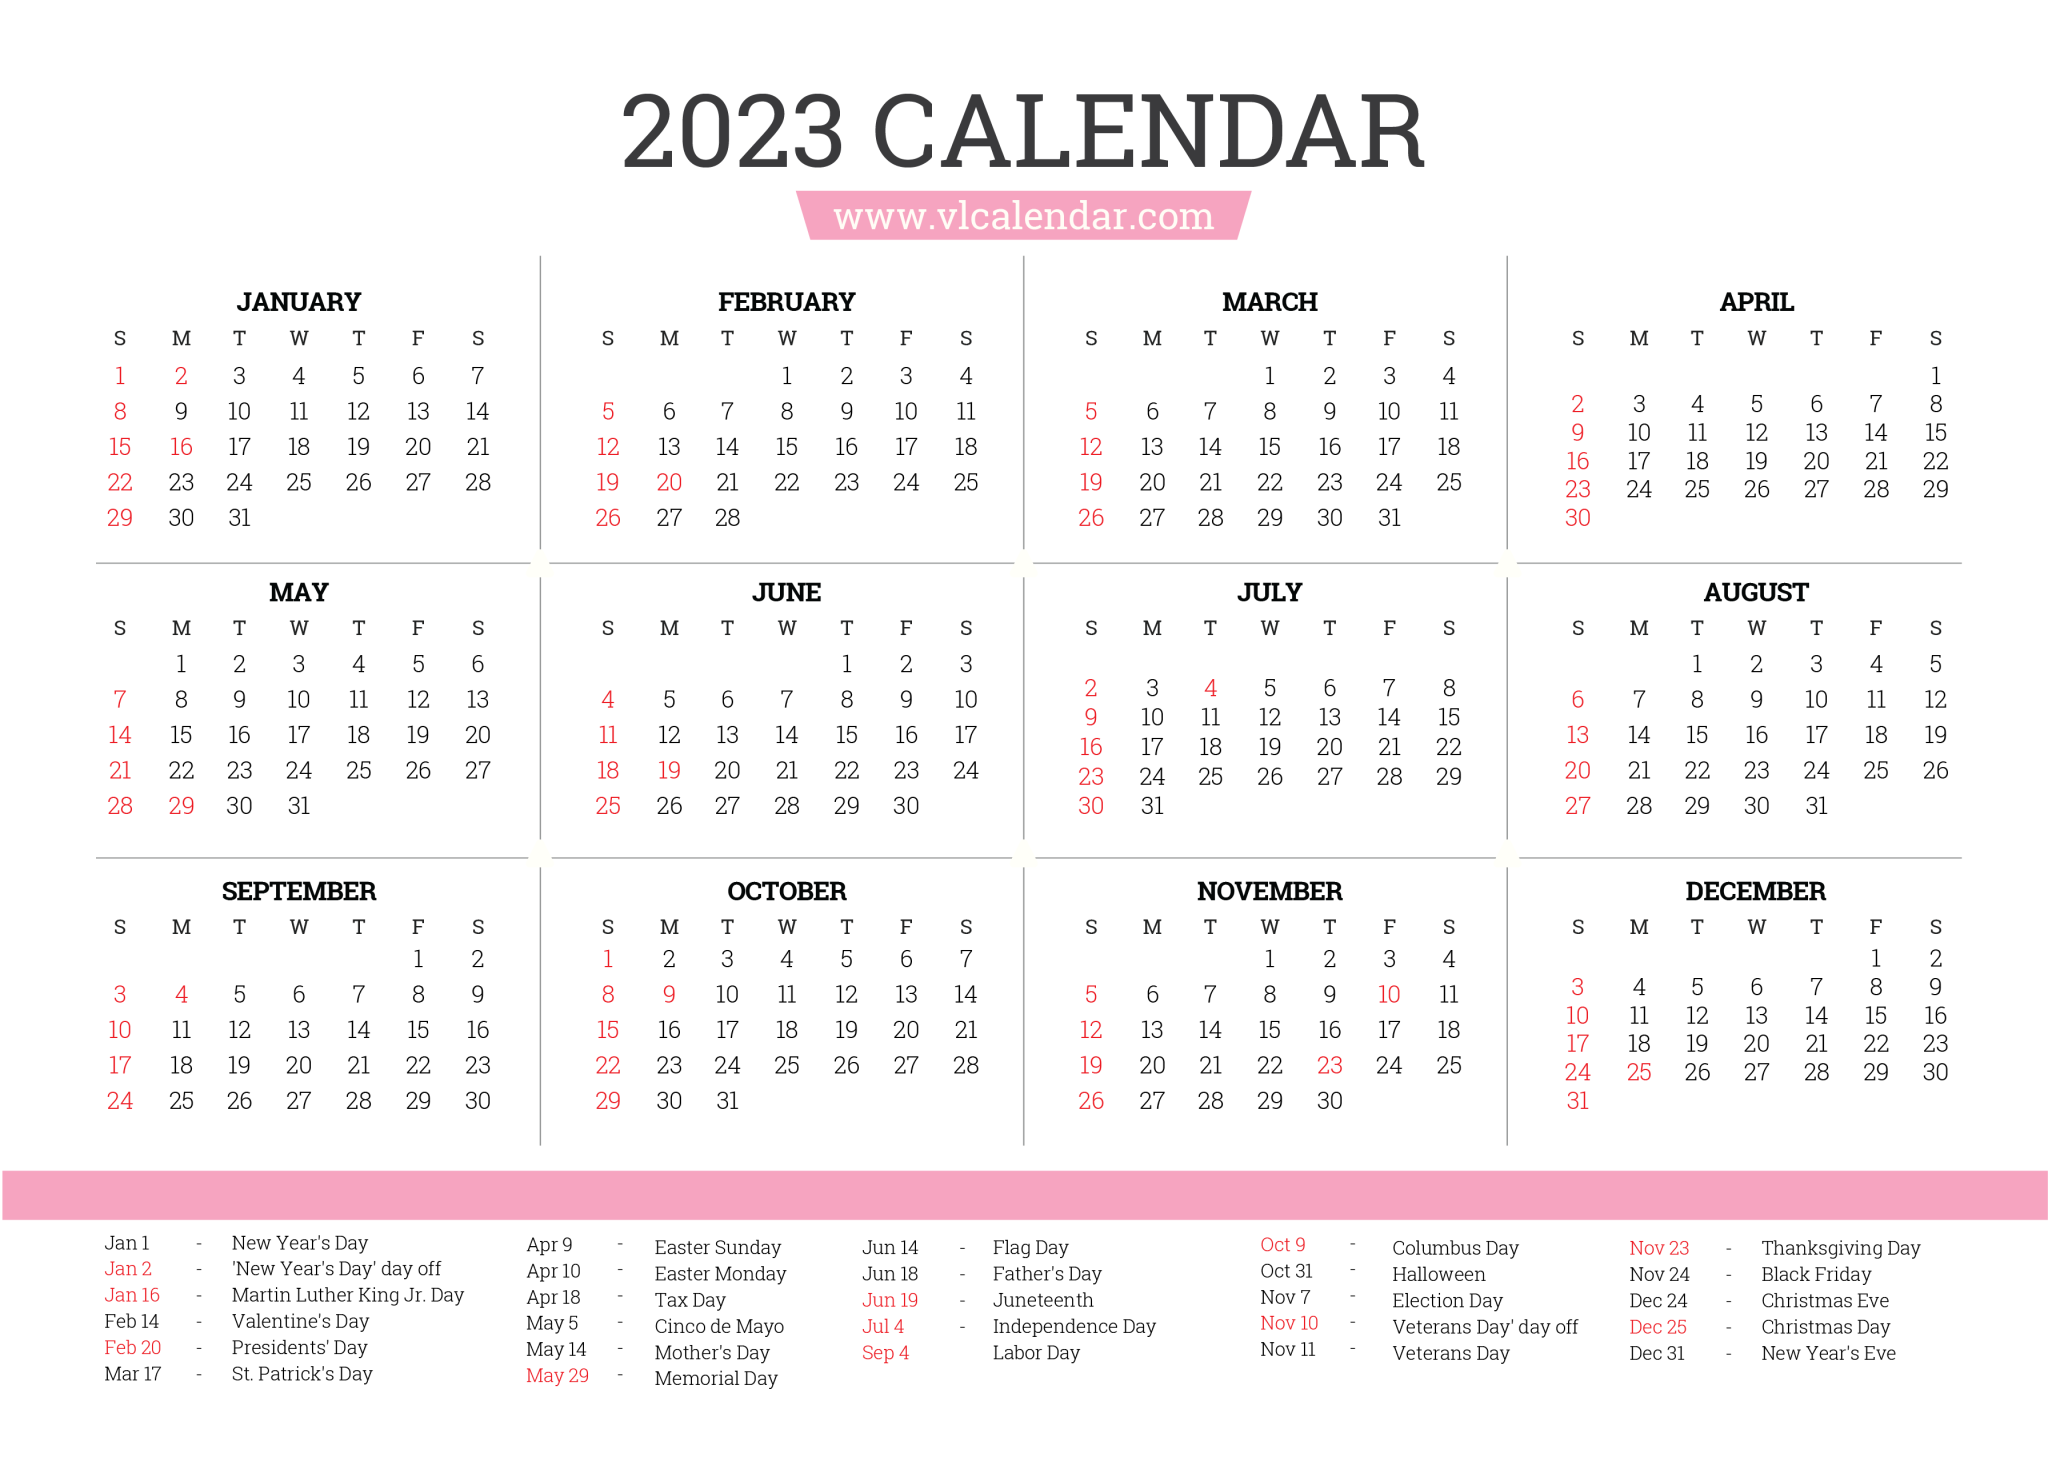 Calendar 2023 Lengkap Cdr Get Calendar 2023 Update On Ovarian IMAGESEE